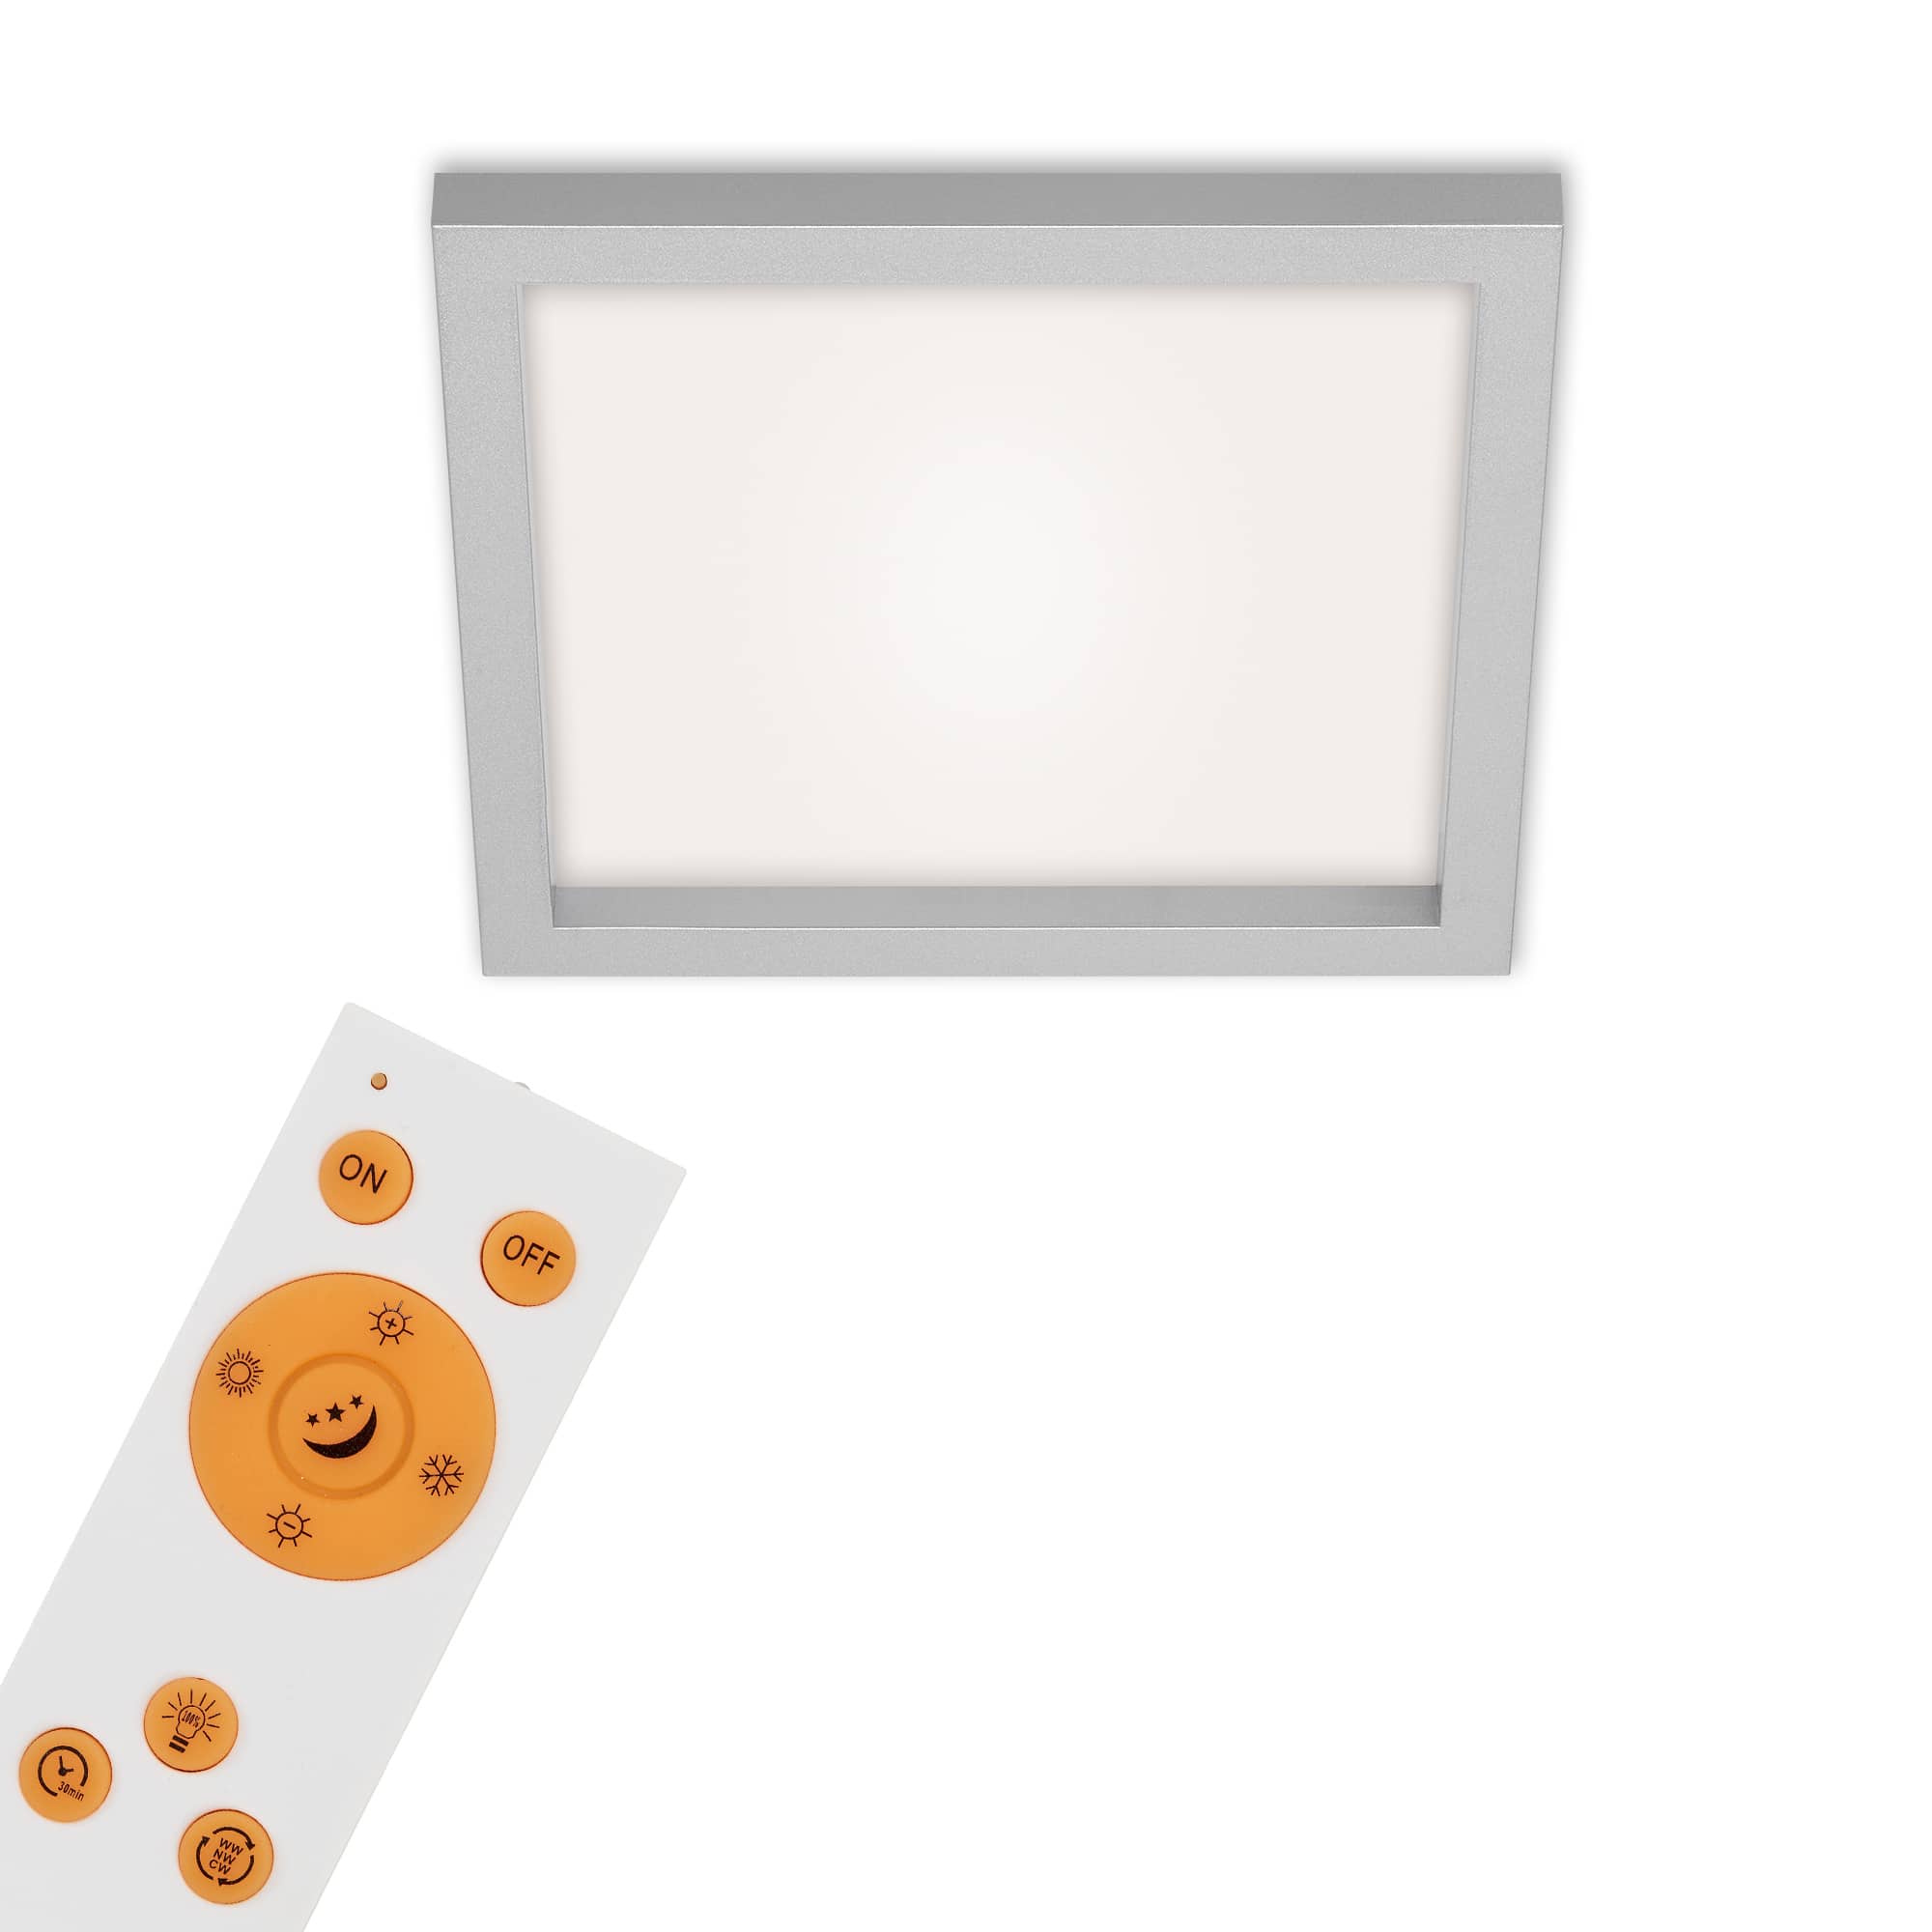 CCT LED Panel, 29,5 cm, 1800 LUMEN, 18 WATT, Chrom-Matt